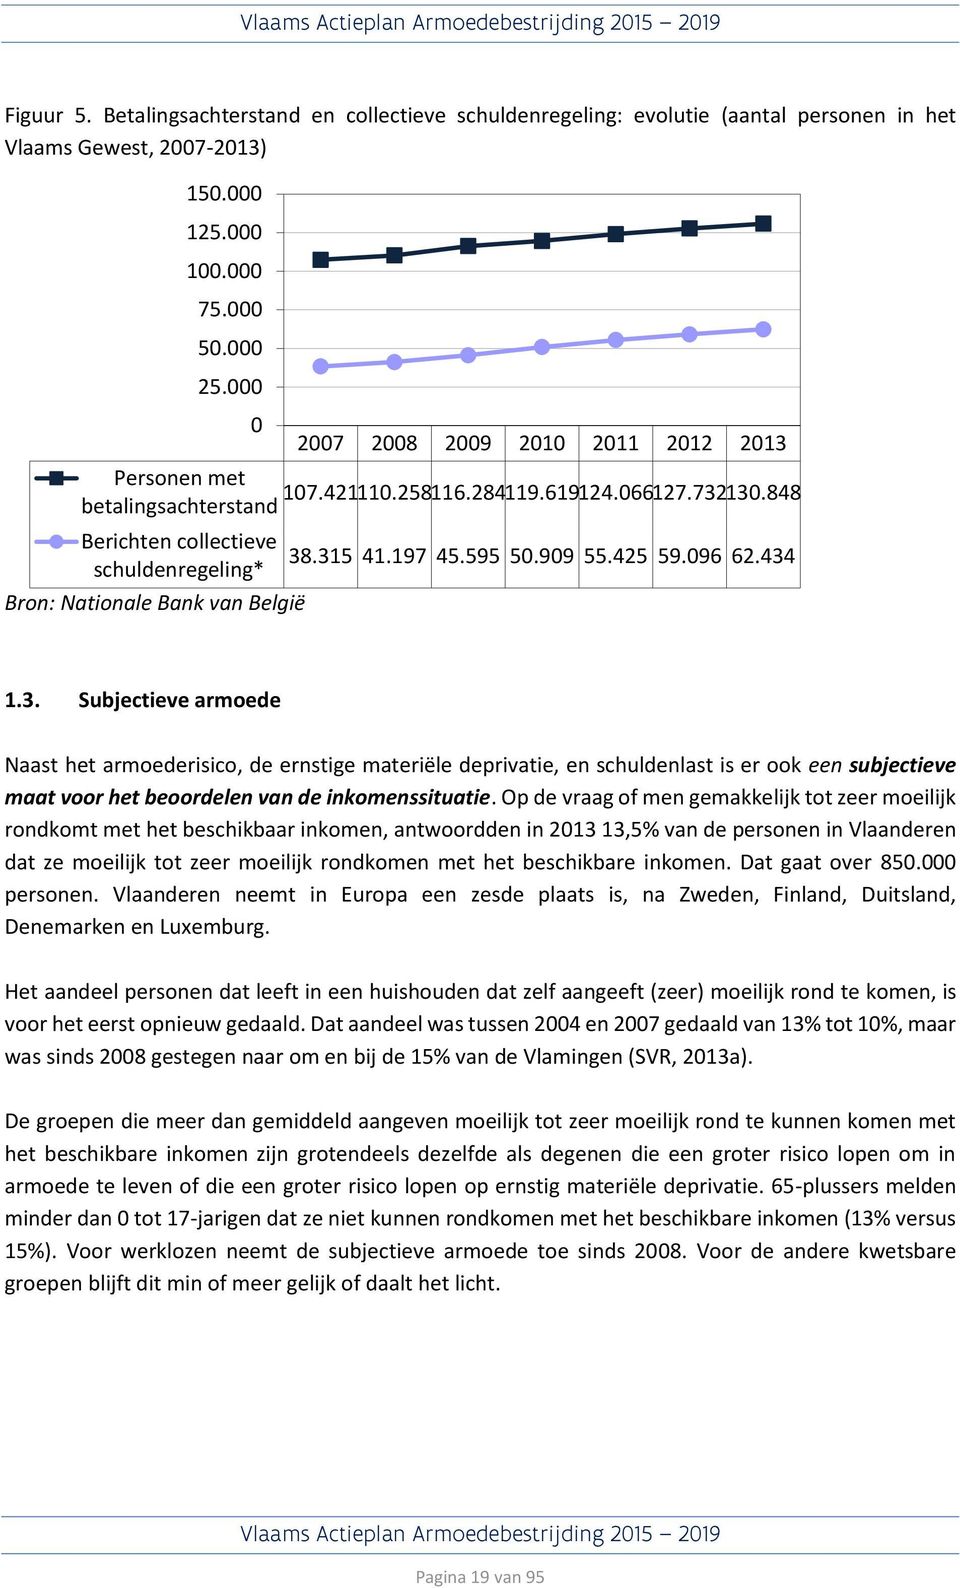 434 schuldenregeling* Bron: Nationale Bank van België 1.3. Subjectieve armoede Naast het armoederisico, de ernstige materiële deprivatie, en schuldenlast is er ook een subjectieve maat voor het beoordelen van de inkomenssituatie.